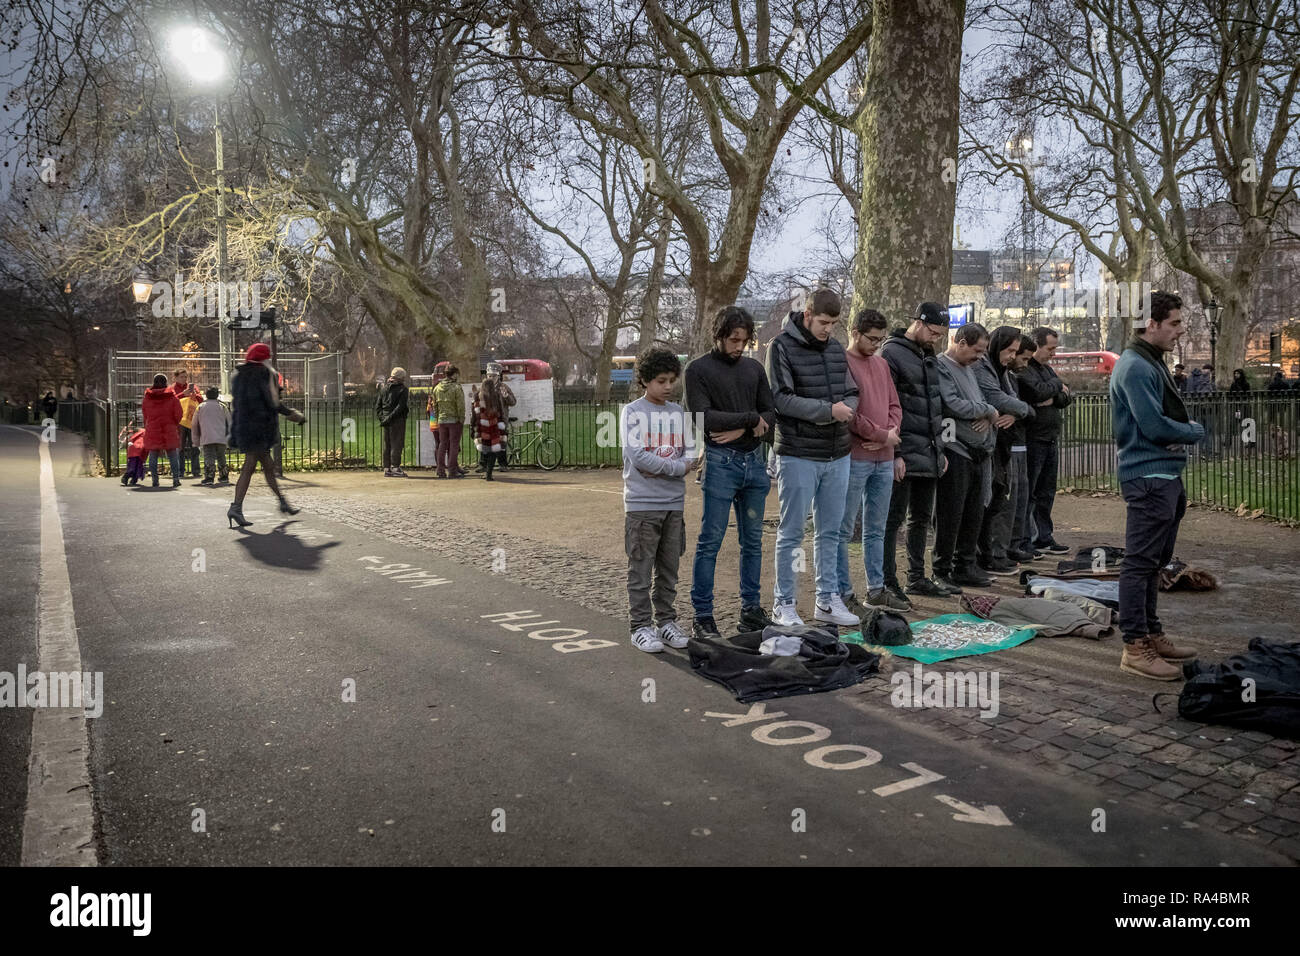 El Speakers' Corner para hablar en público, la esquina noreste de Hyde Park en Londres. Foto de stock